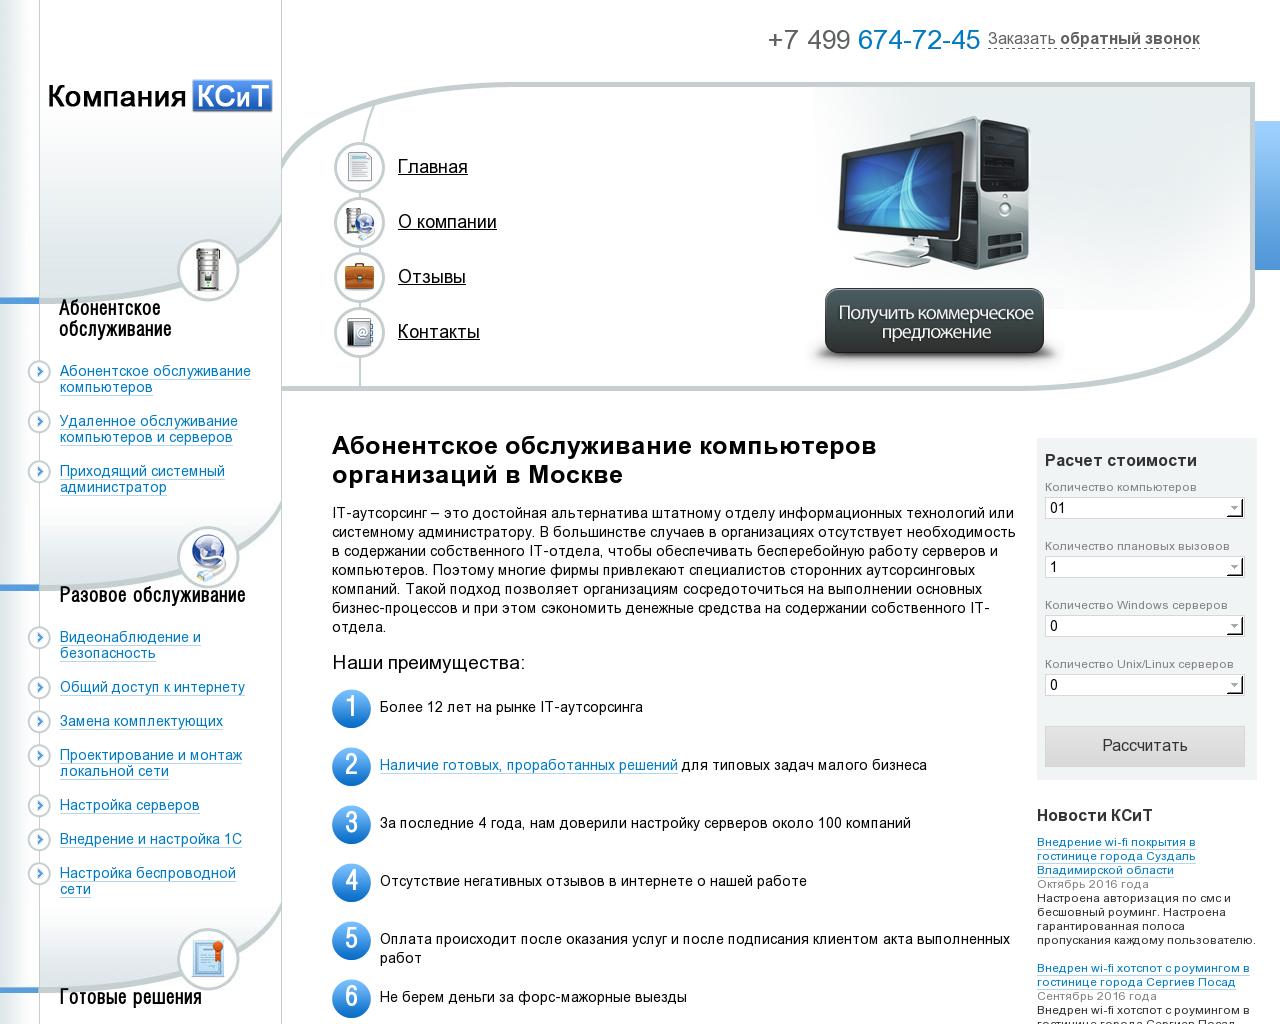 Изображение сайта ksit.ru в разрешении 1280x1024